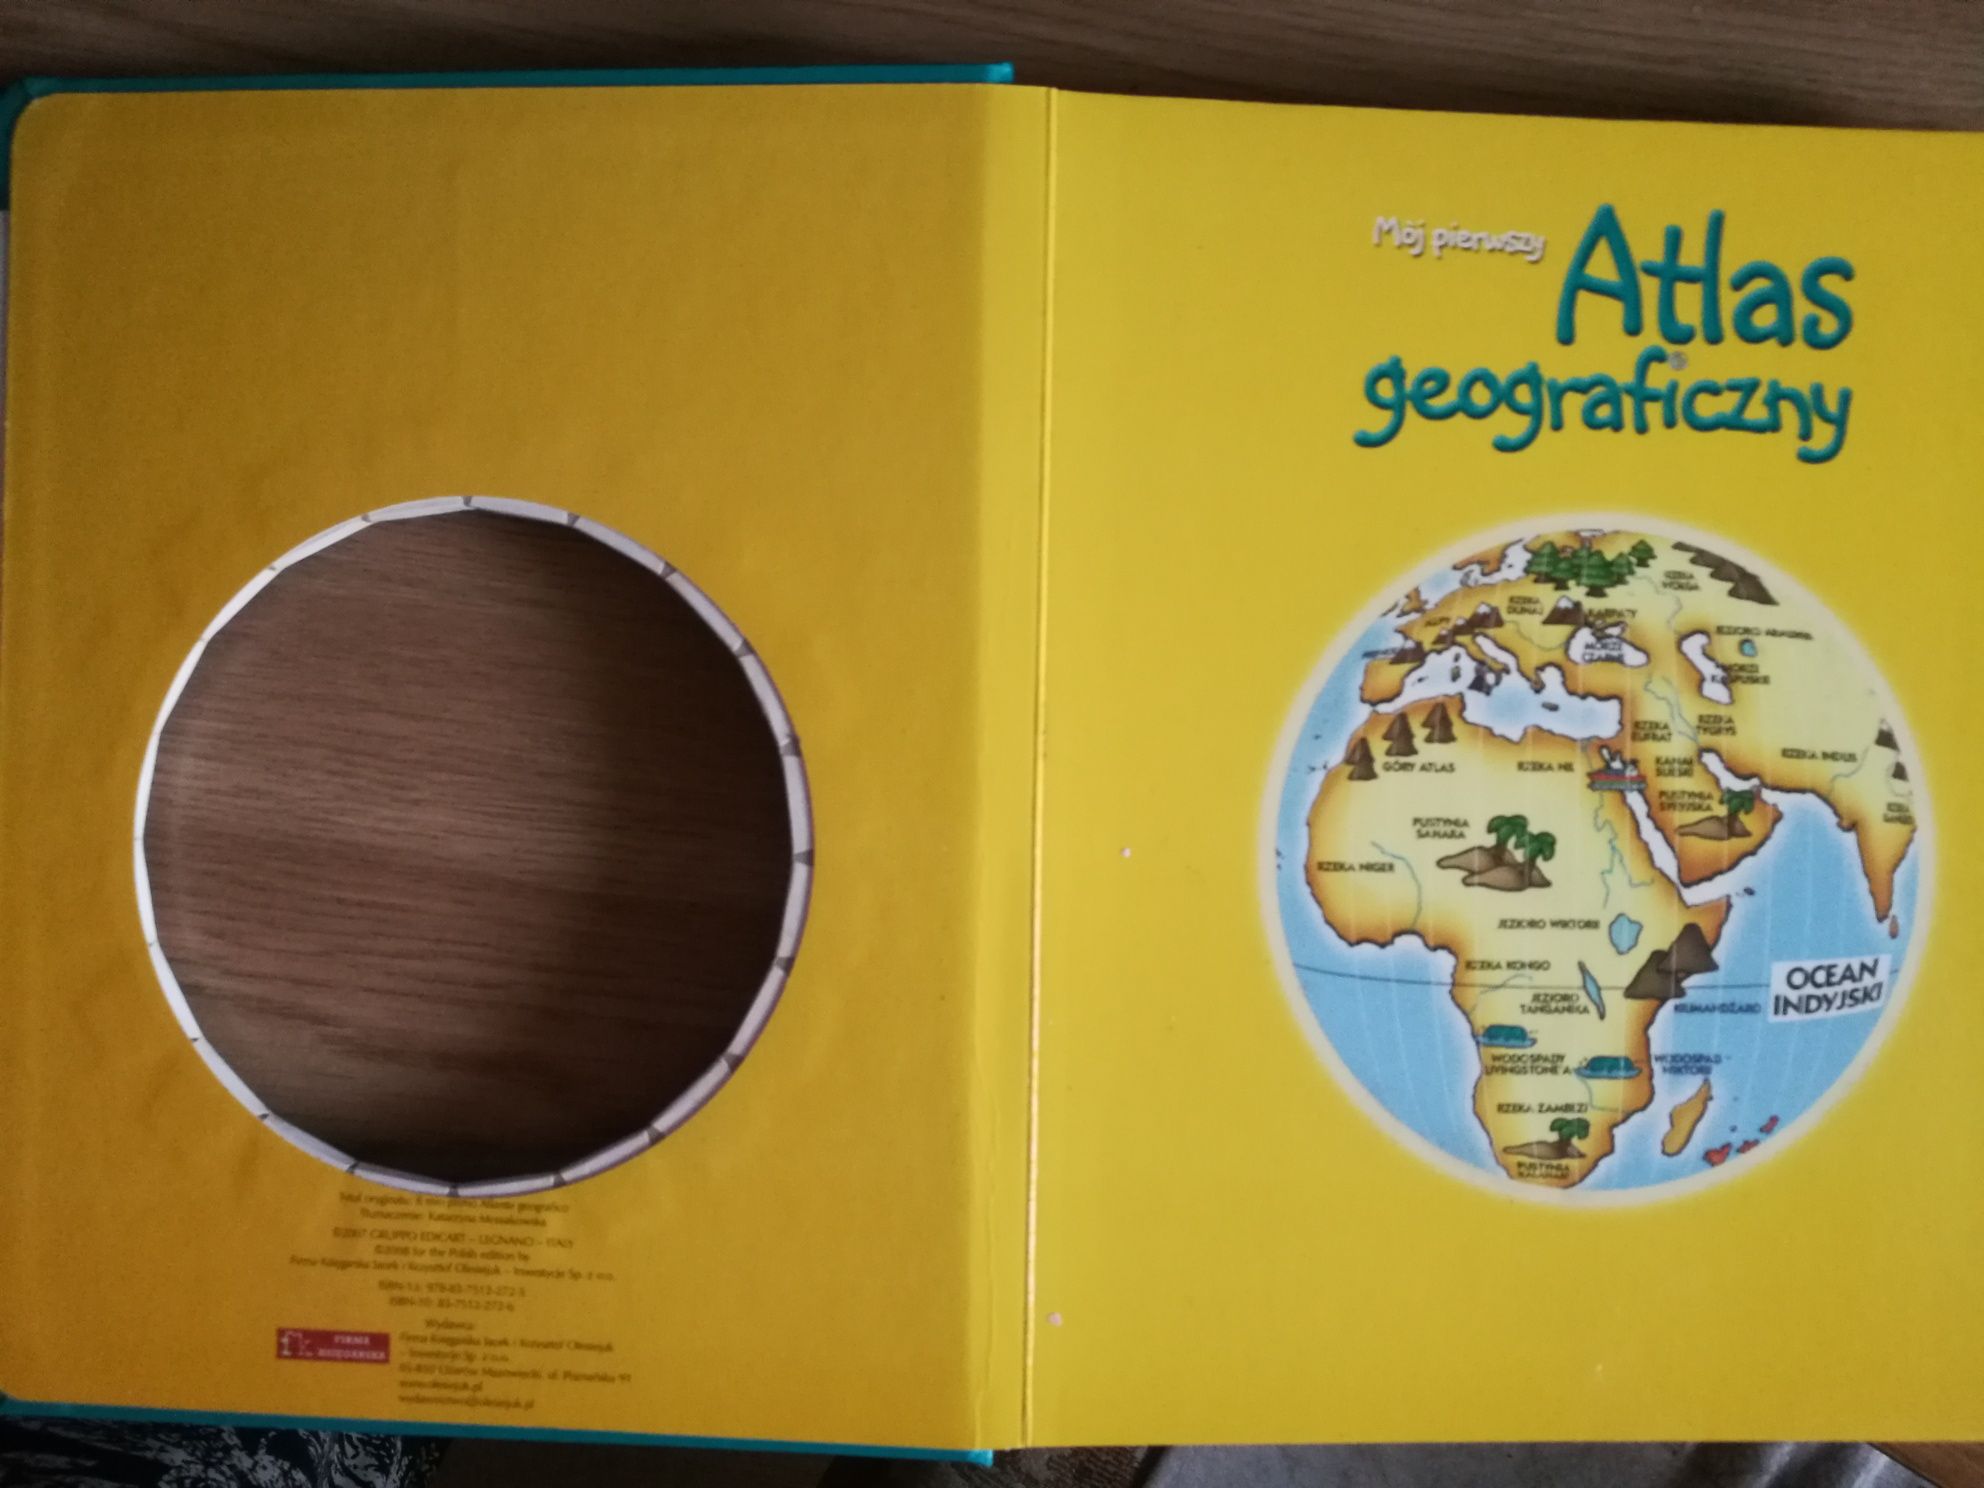 Mój pierwszy atlas geograficzny